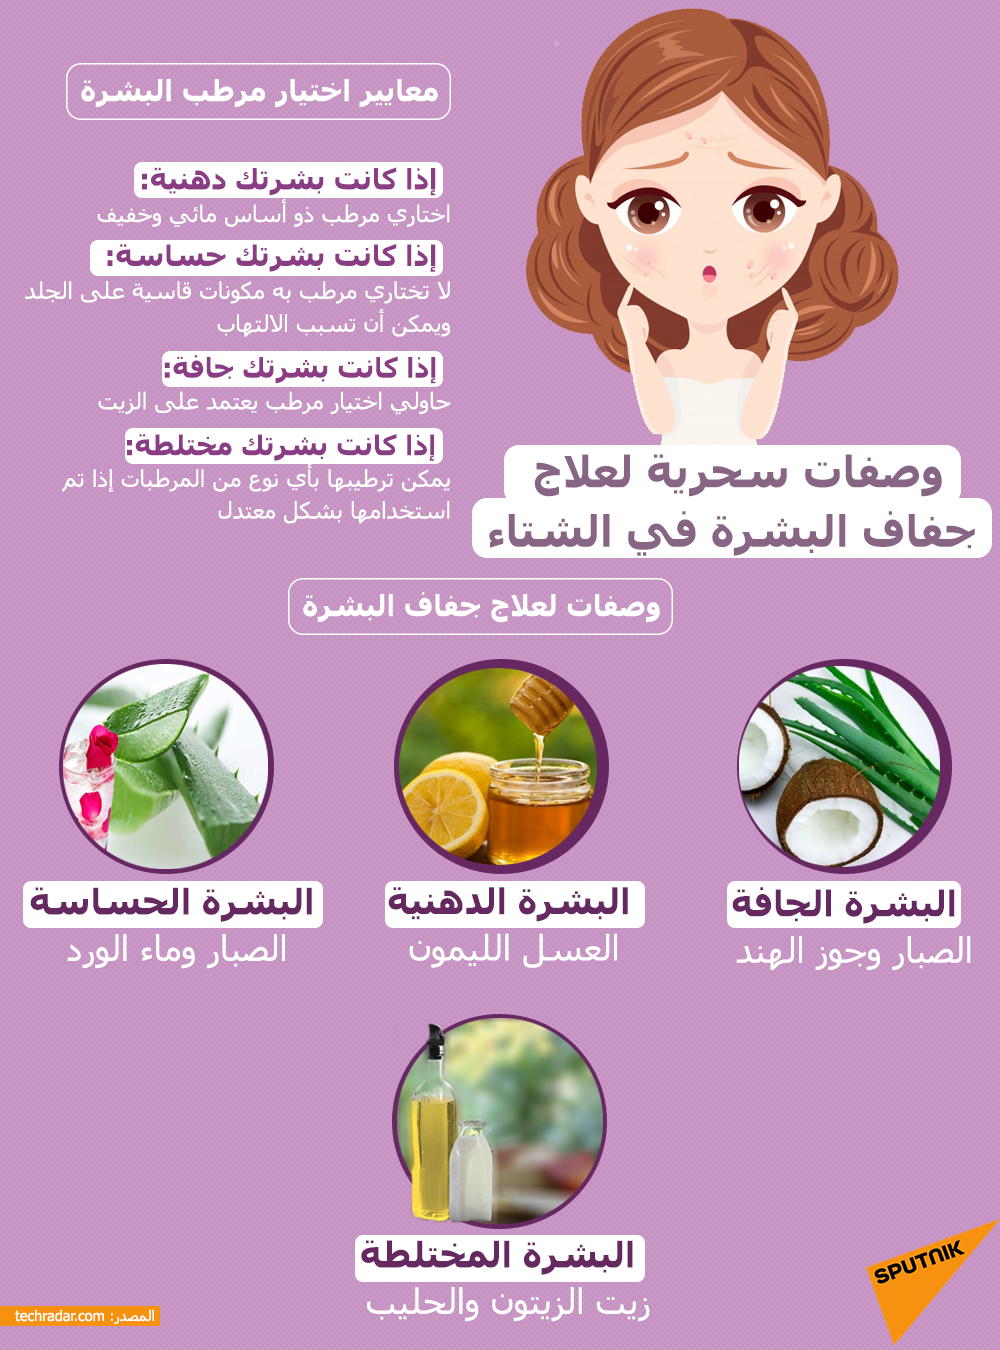 وصفات سحرية لعلاج جفاف البشرة في الشتاء - سبوتنيك عربي